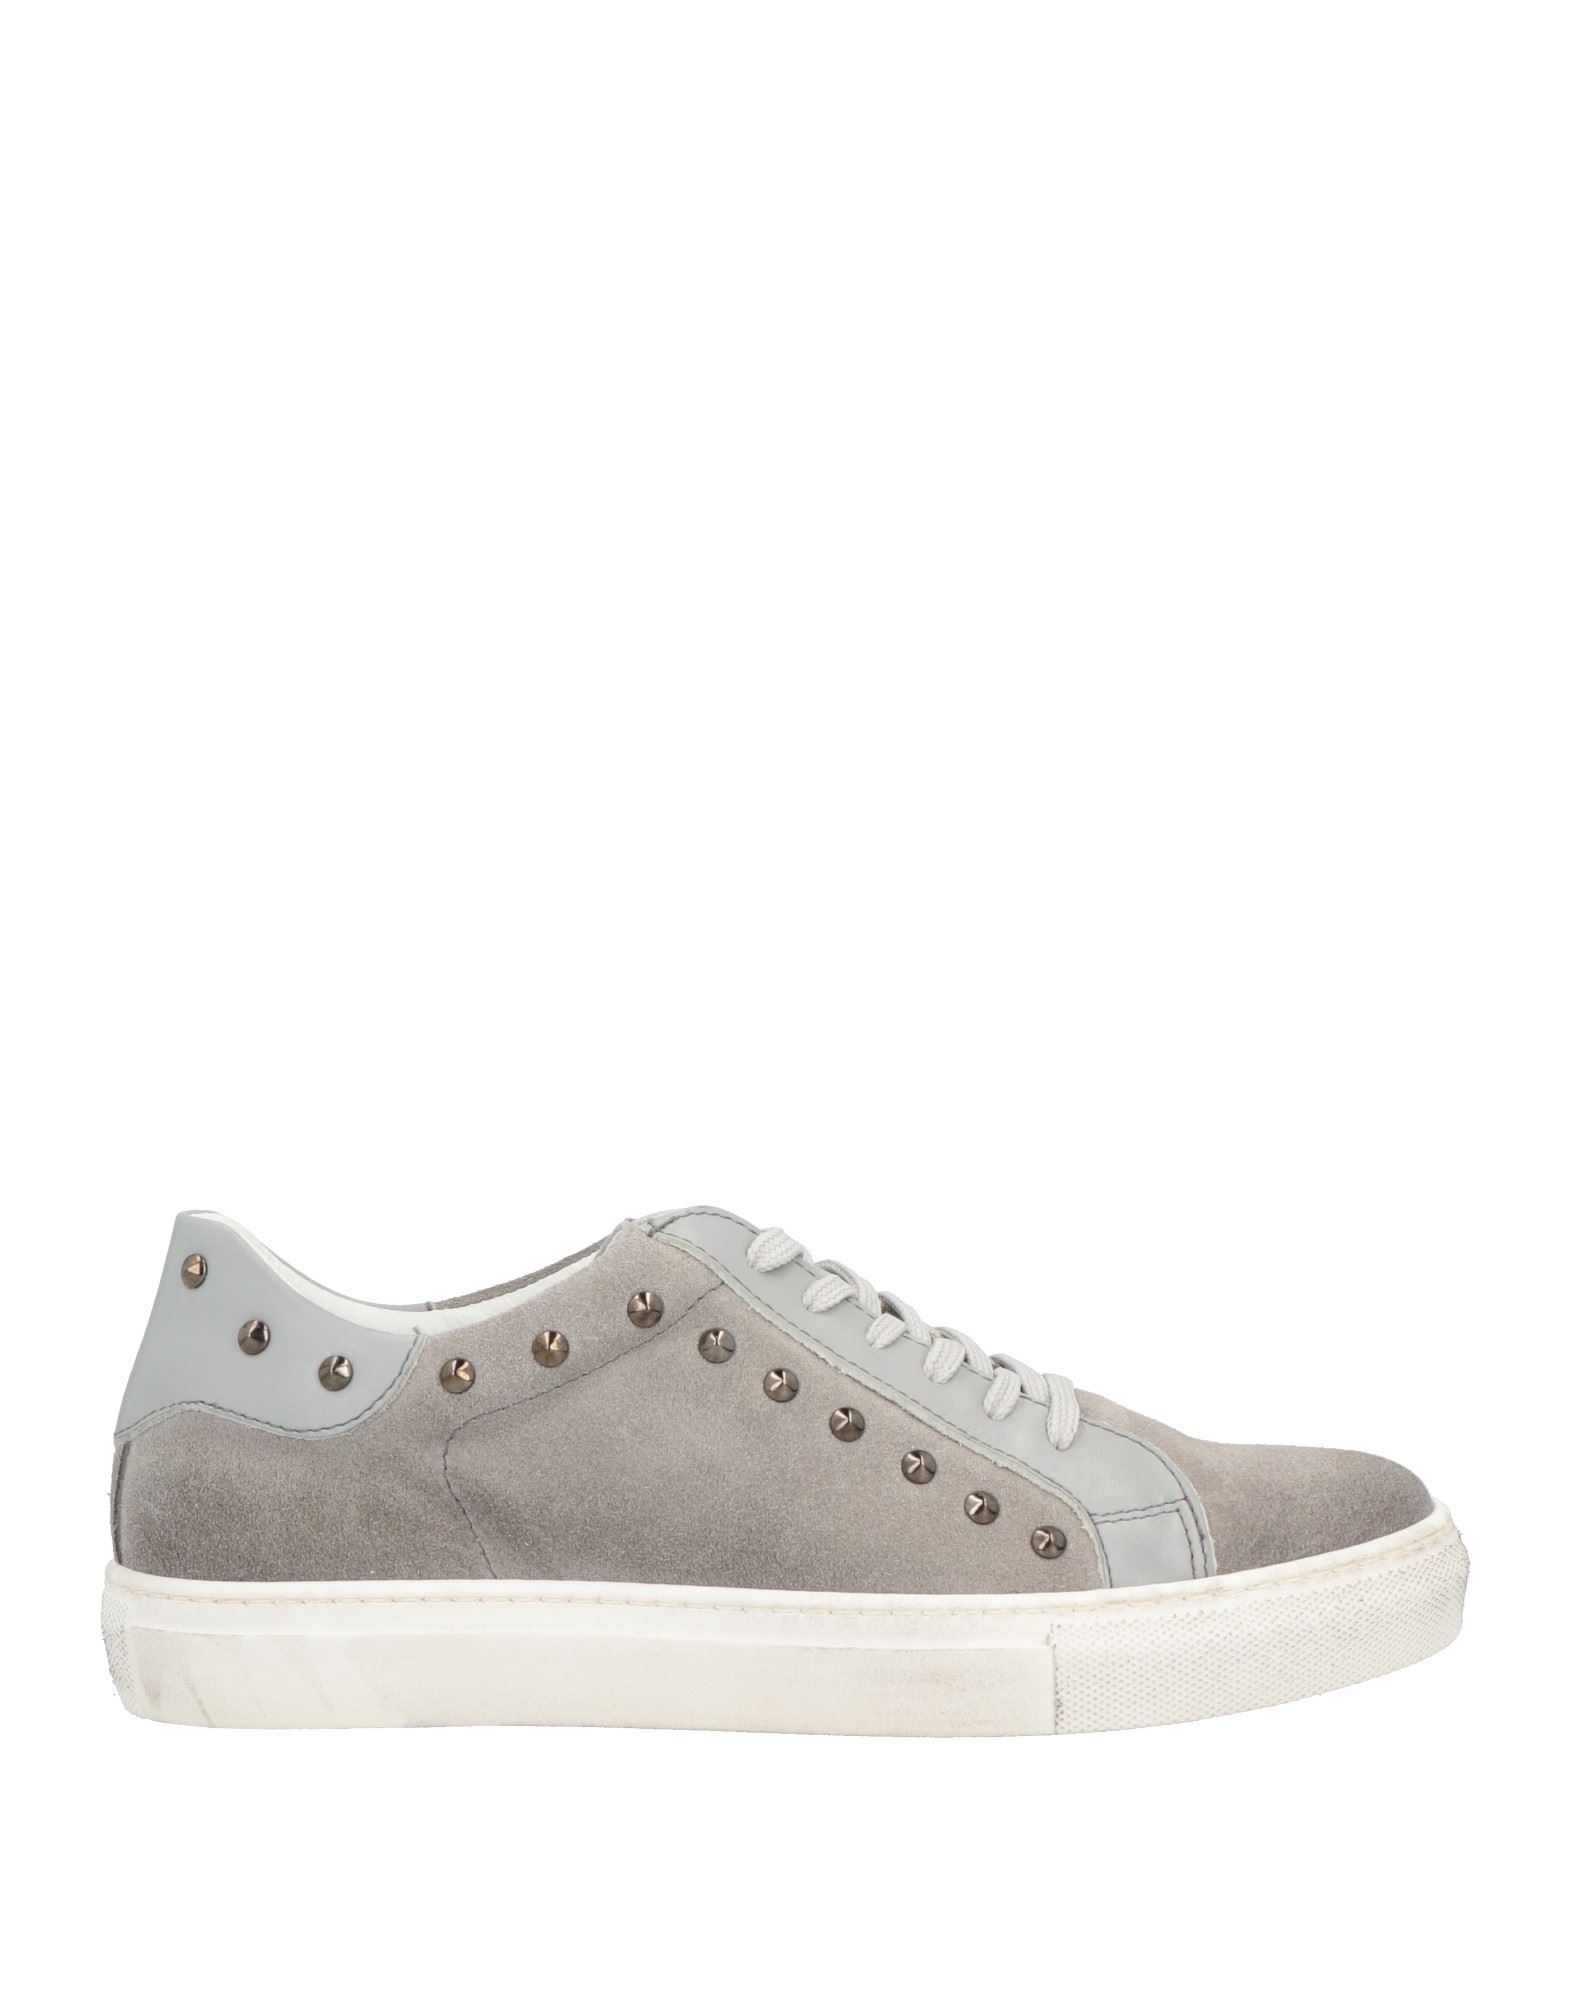 Daniele Alessandrini Sneakers In Grey